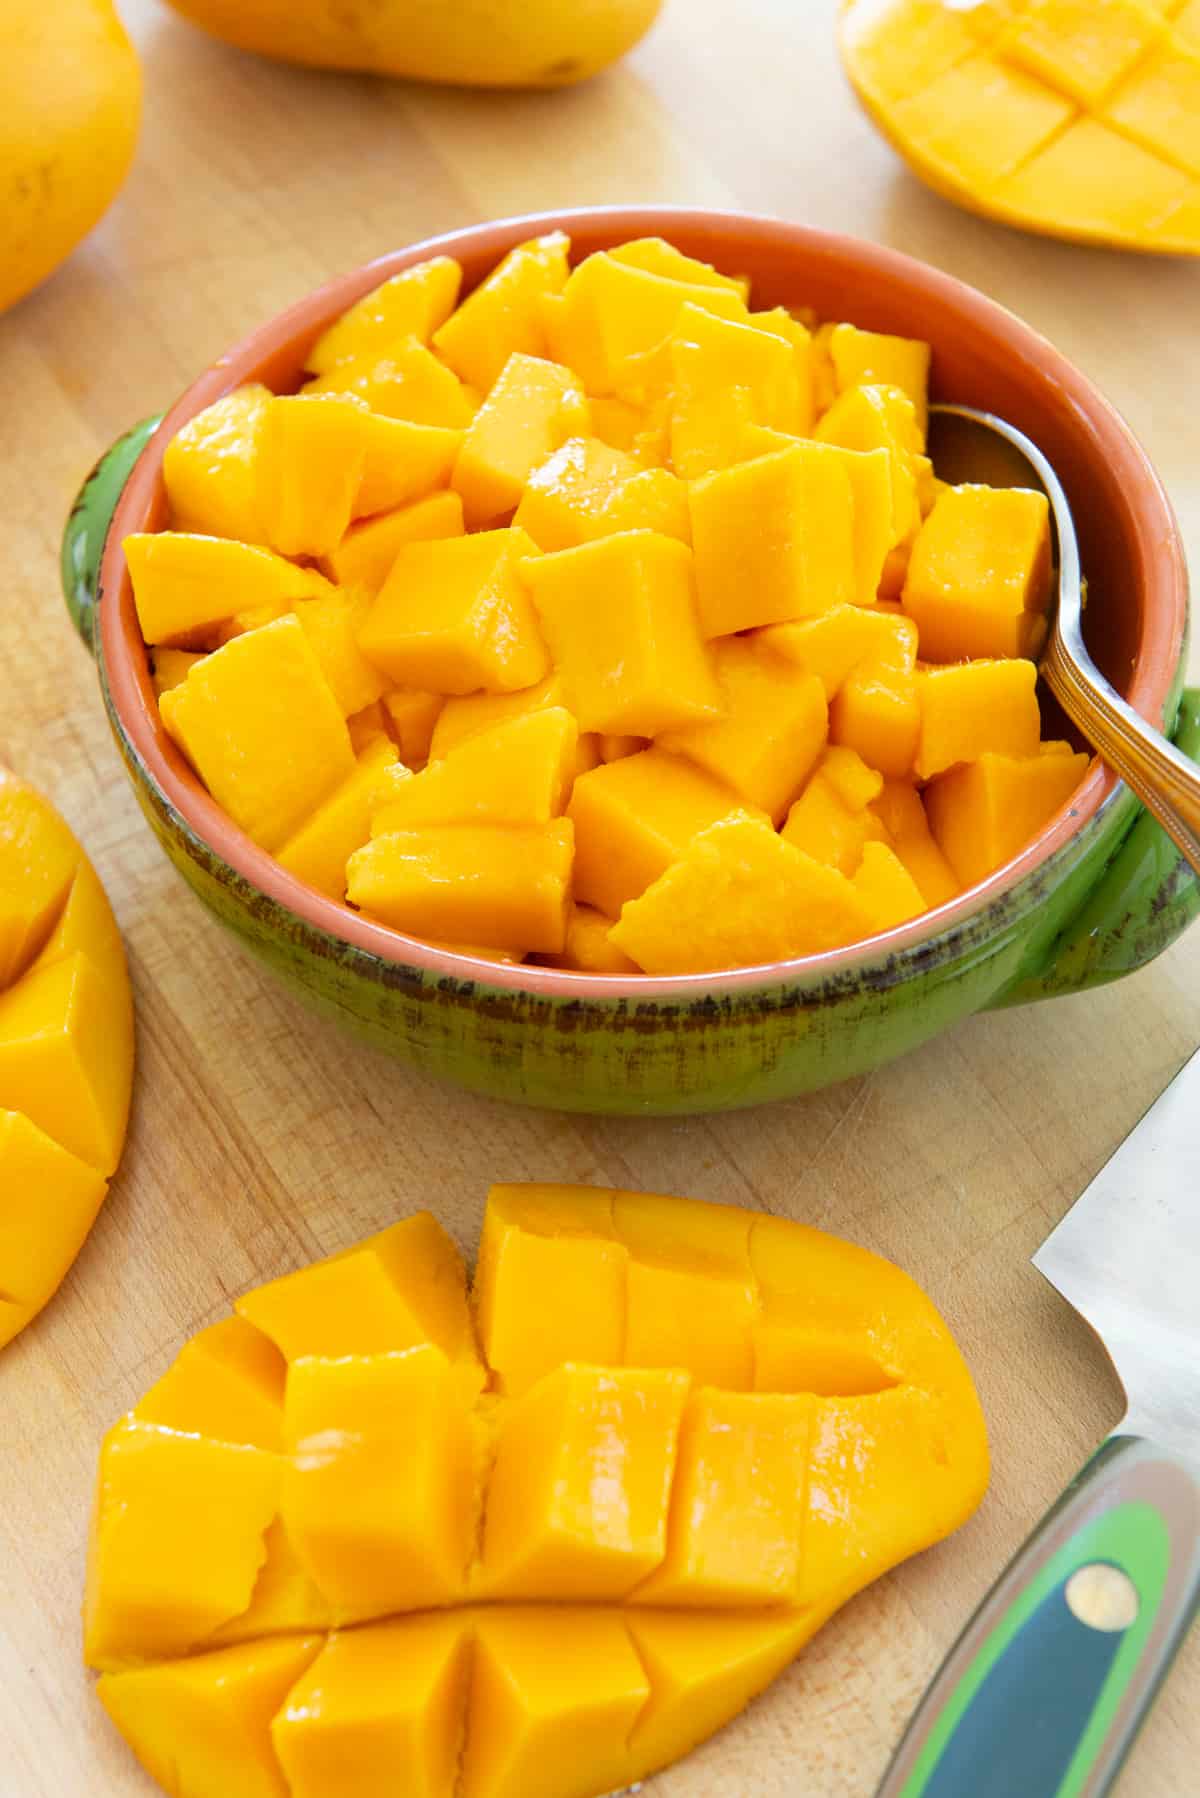 Mango Cubes In a bowl with Cut Mango Half On Board